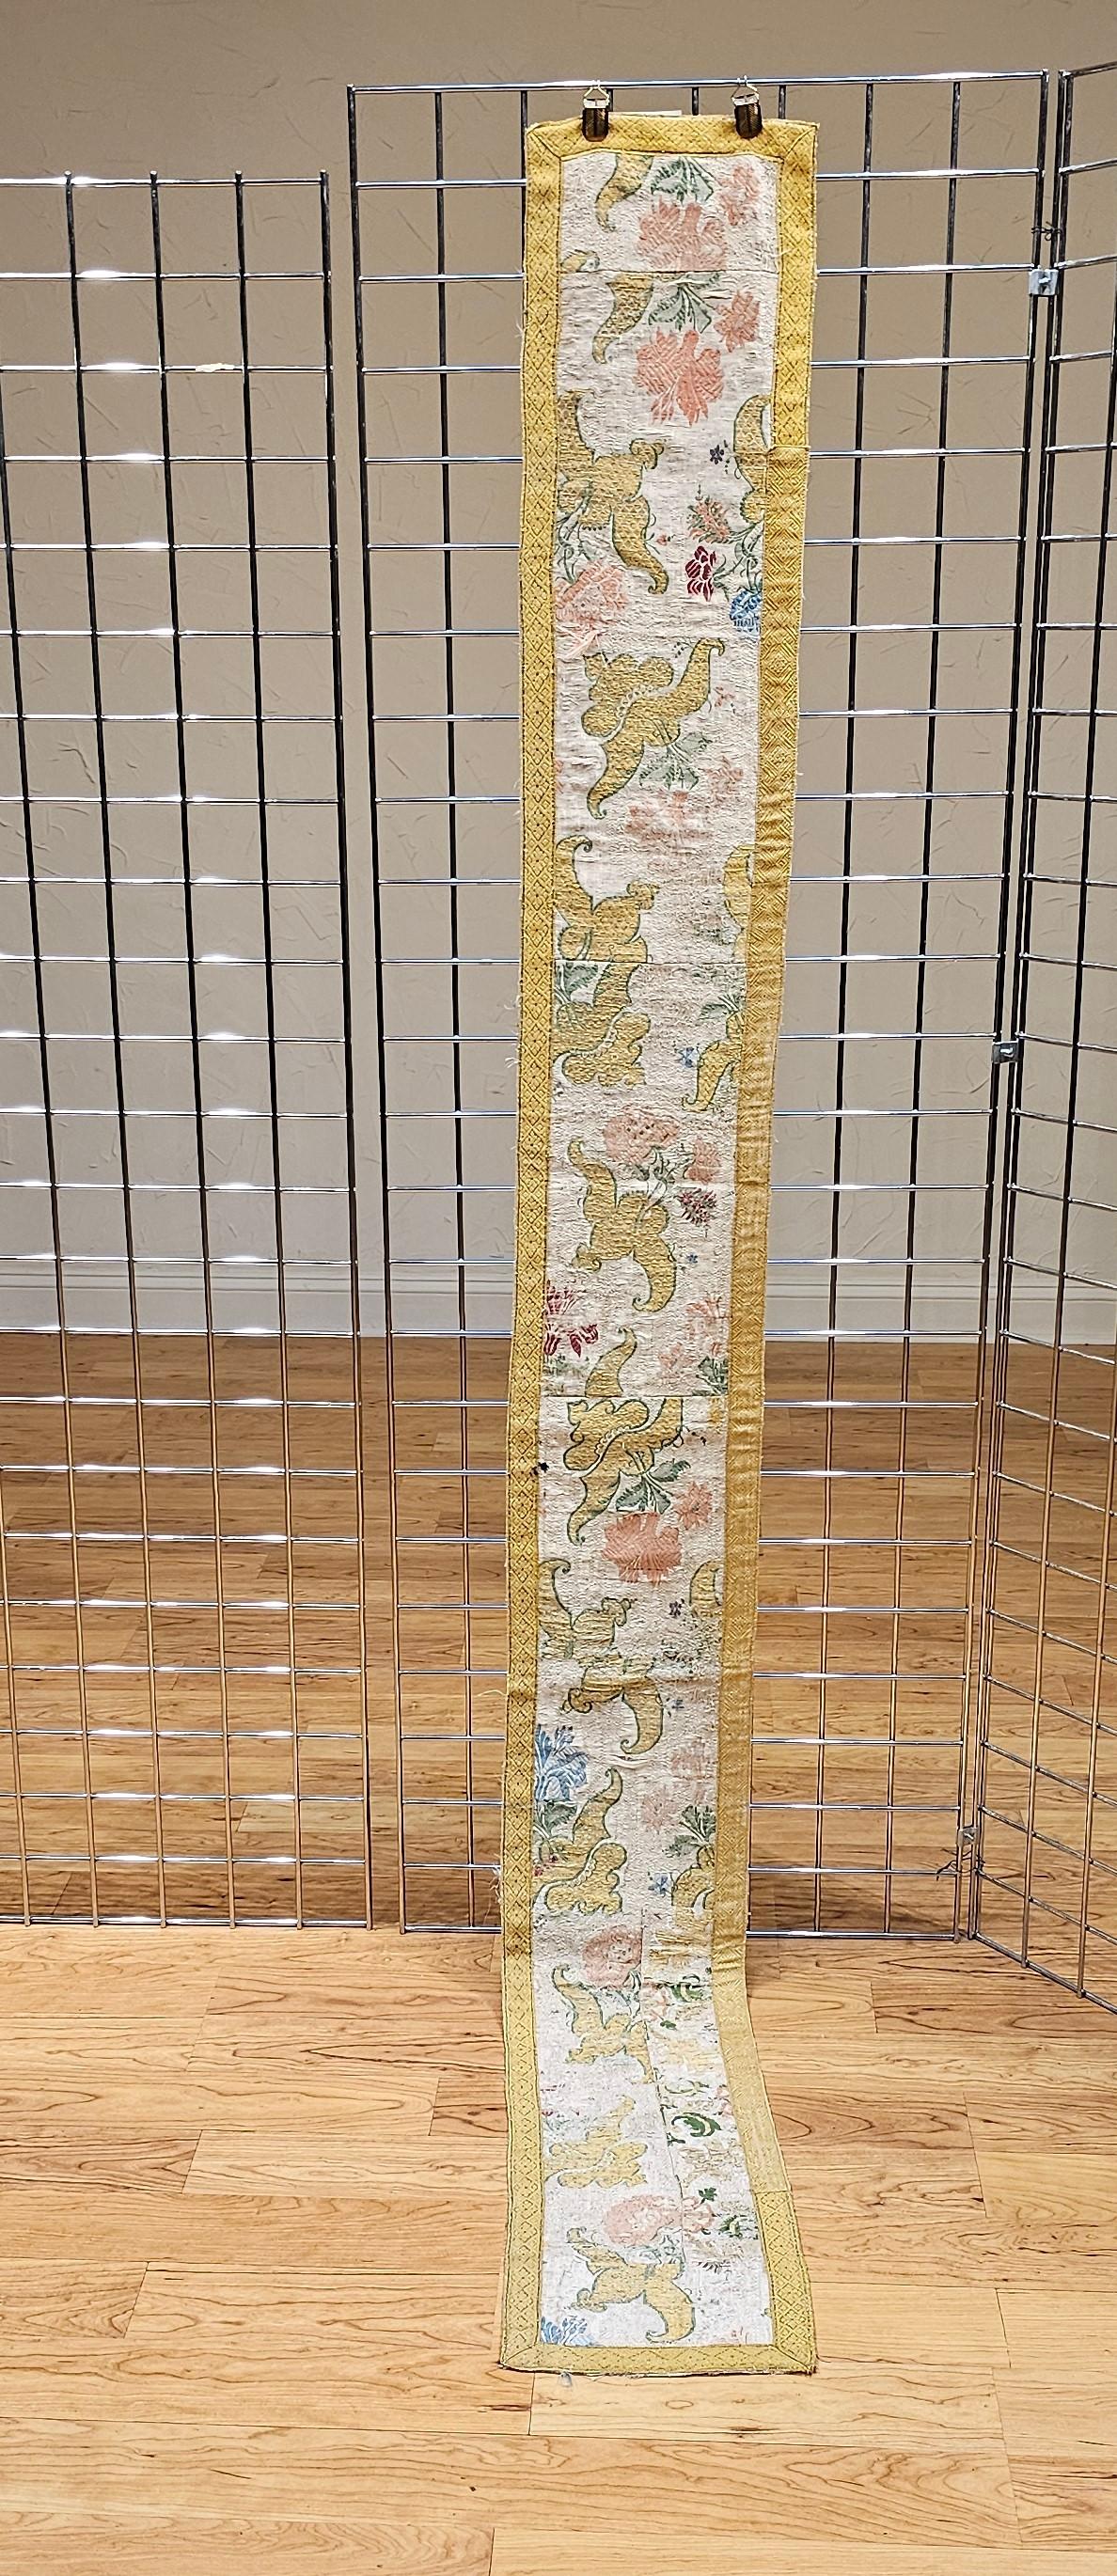 Europäisches handgefertigtes, mit Seide und Goldfäden besticktes Wandteppich-Paneel aus dem 18. Jahrhundert. Das Stück wird durch die Wiederverwendung von Teilen eines handbestickten Gewandes oder eines Gewandschals zu einem Paneel, das als